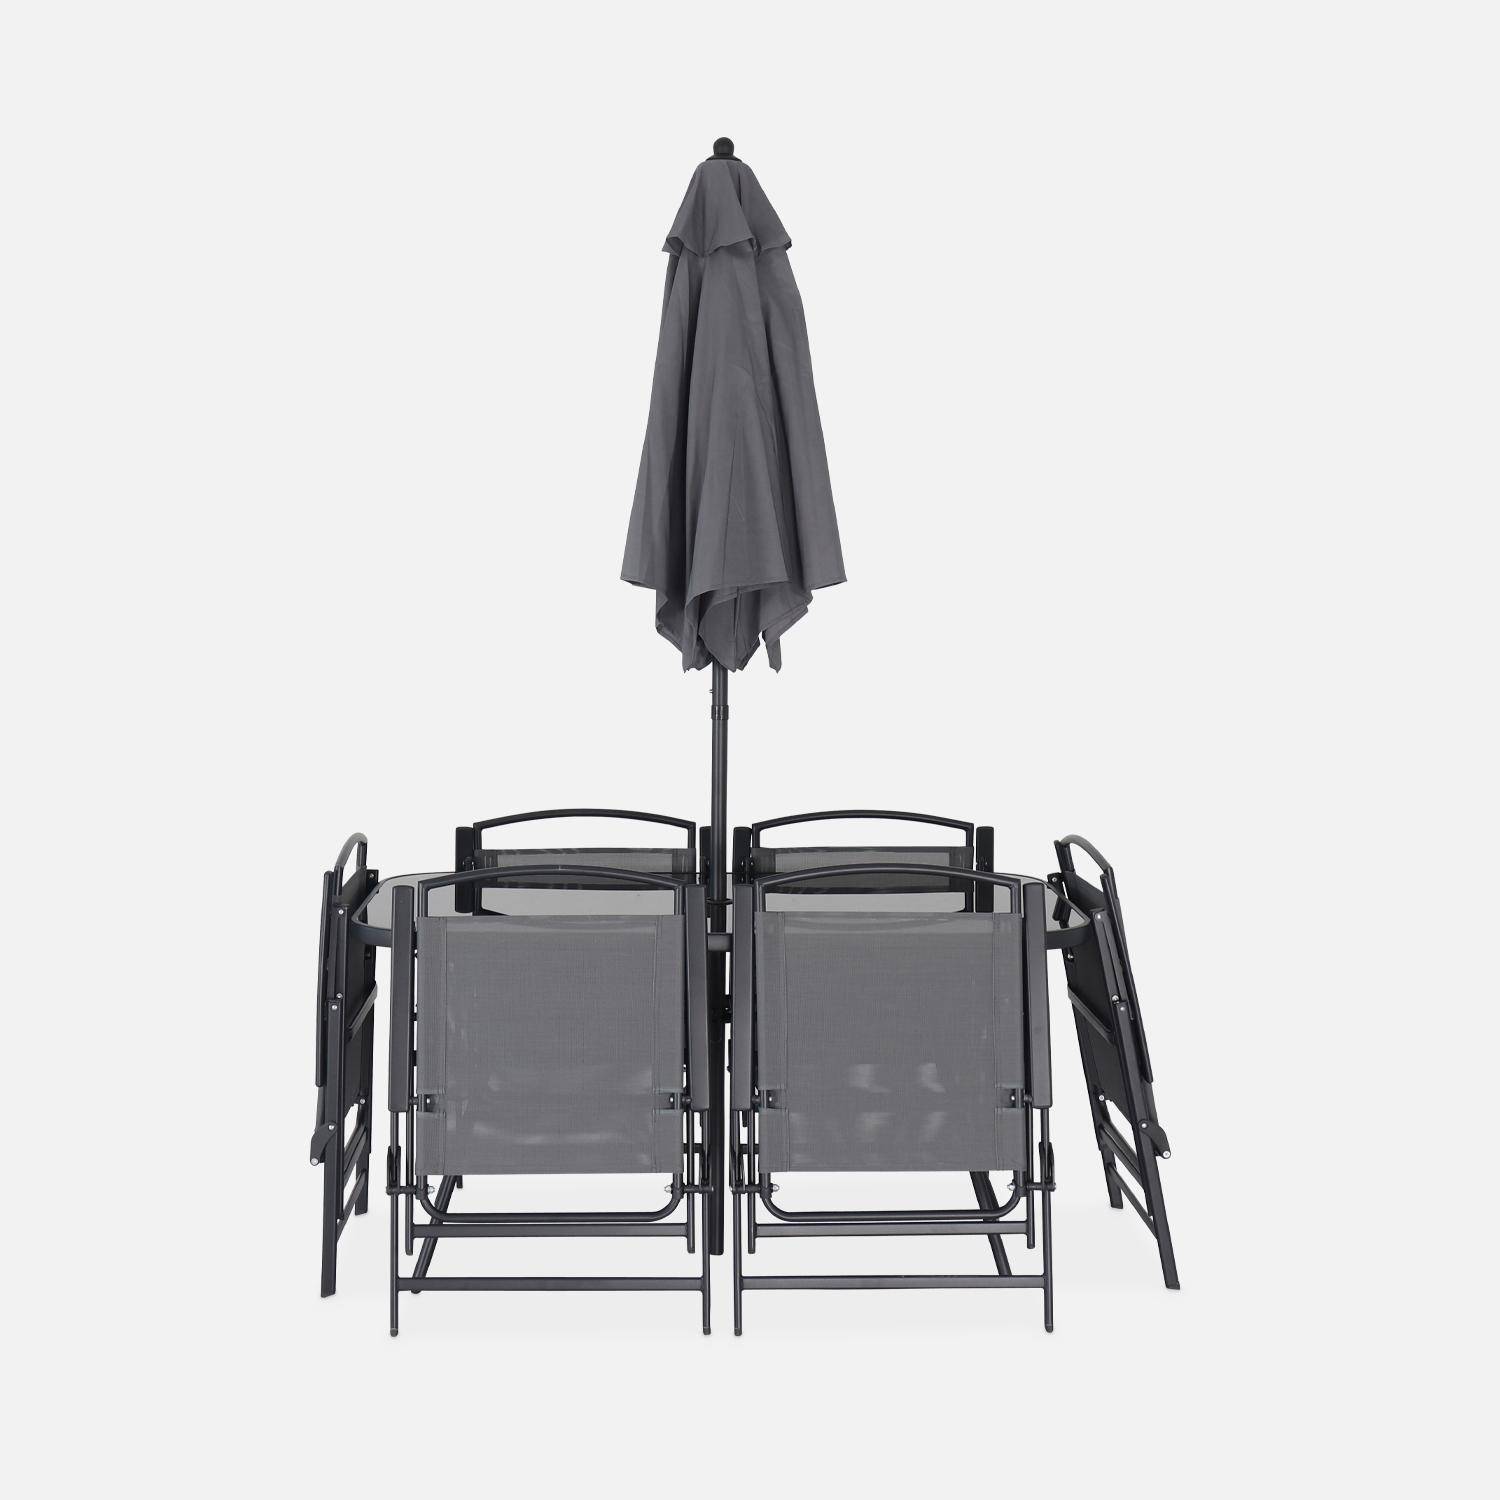 Table de jardin avec 6 fauteuils pliants gris et un parasol 2m, anthracite, structure acier avec revêtement anti rouille,sweeek,Photo5